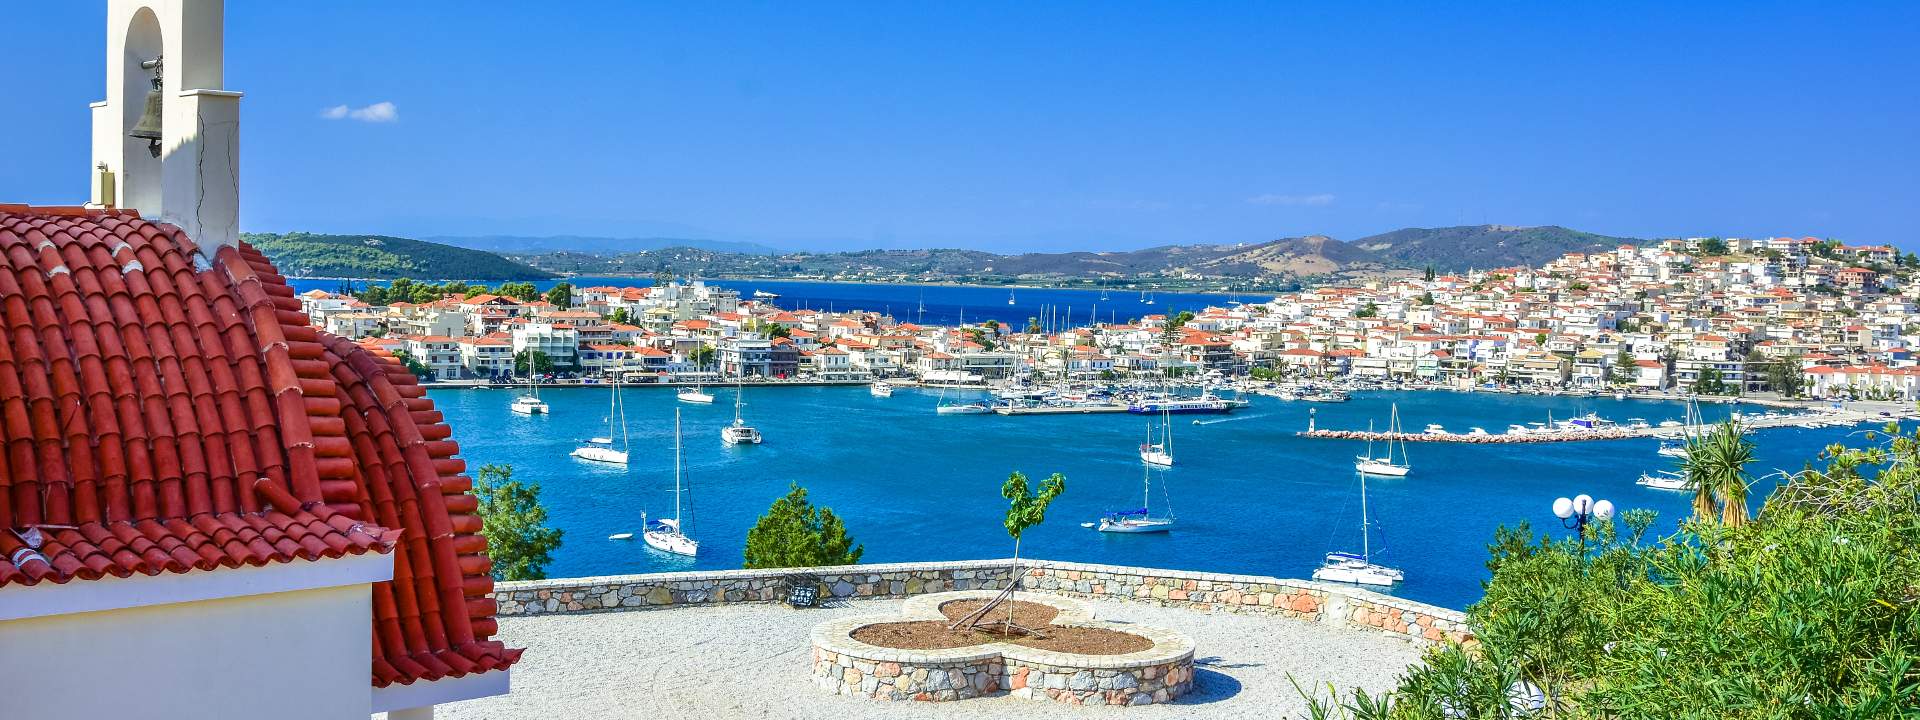 Tauchen Sie ein in Griechenlands malerische Inselwelt